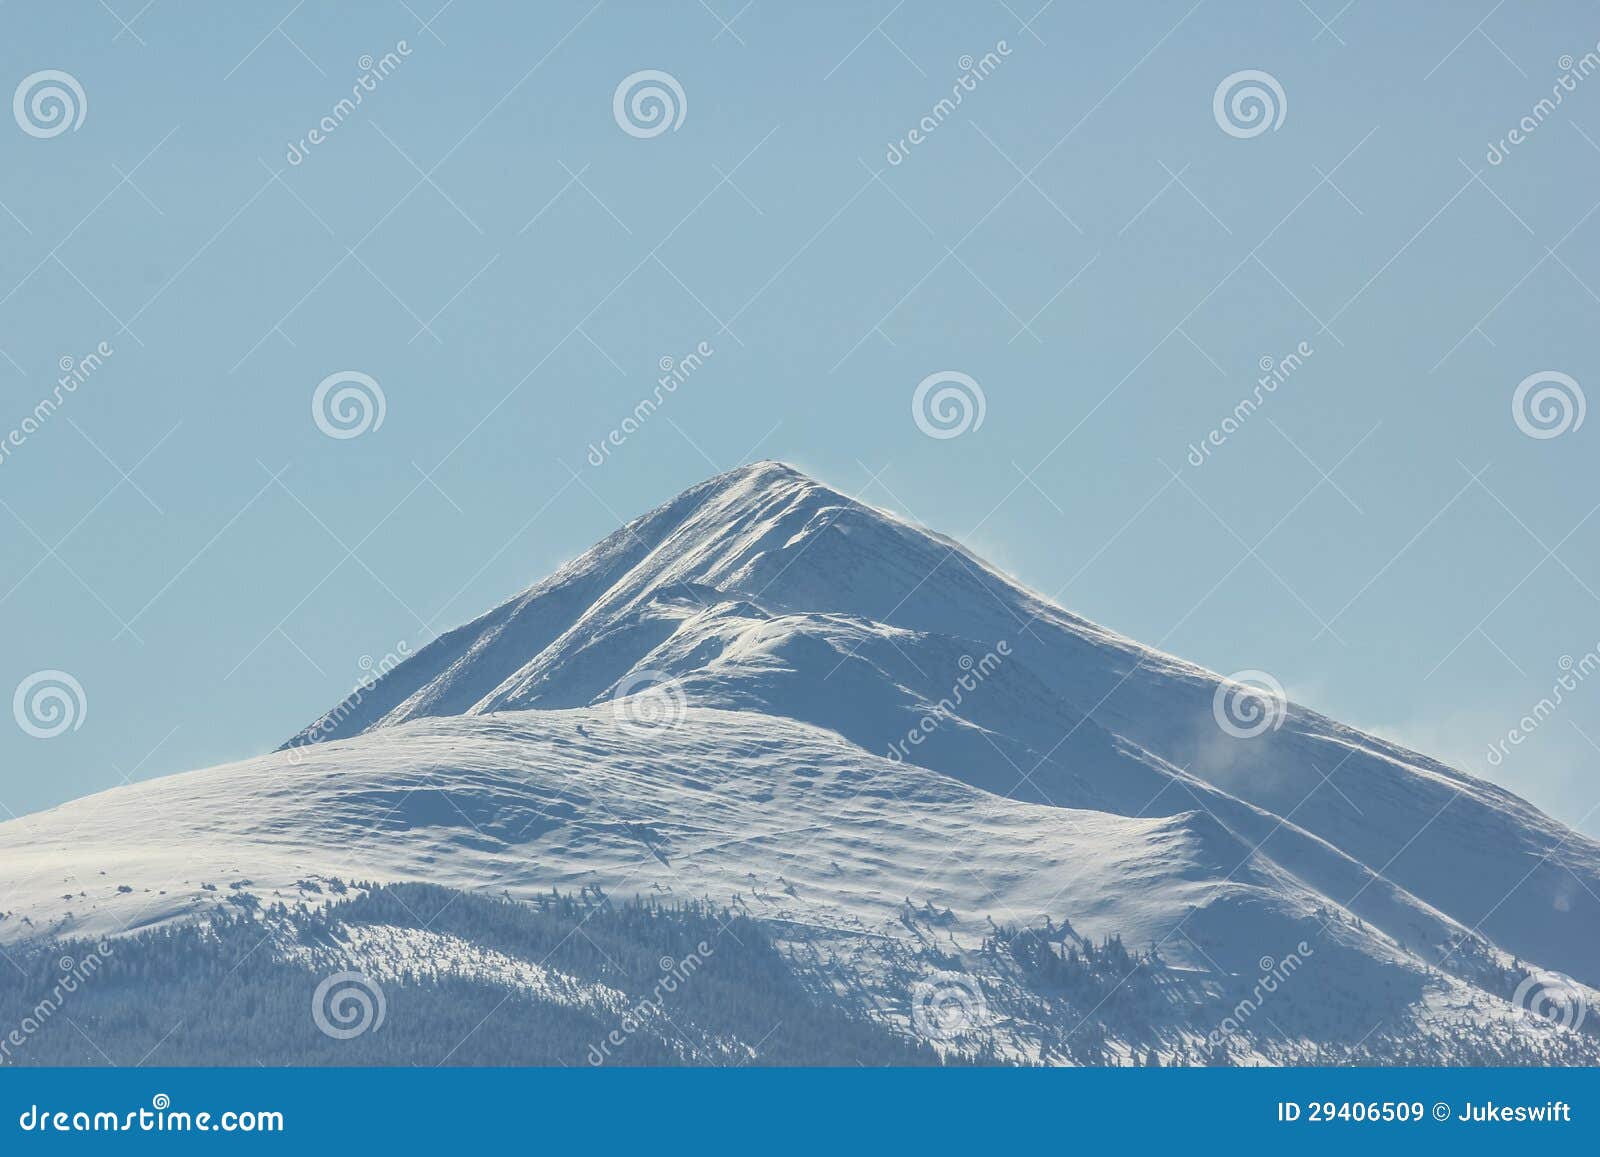 Sommità delle montagne rocciose. Derive della neve su una sommità della montagna